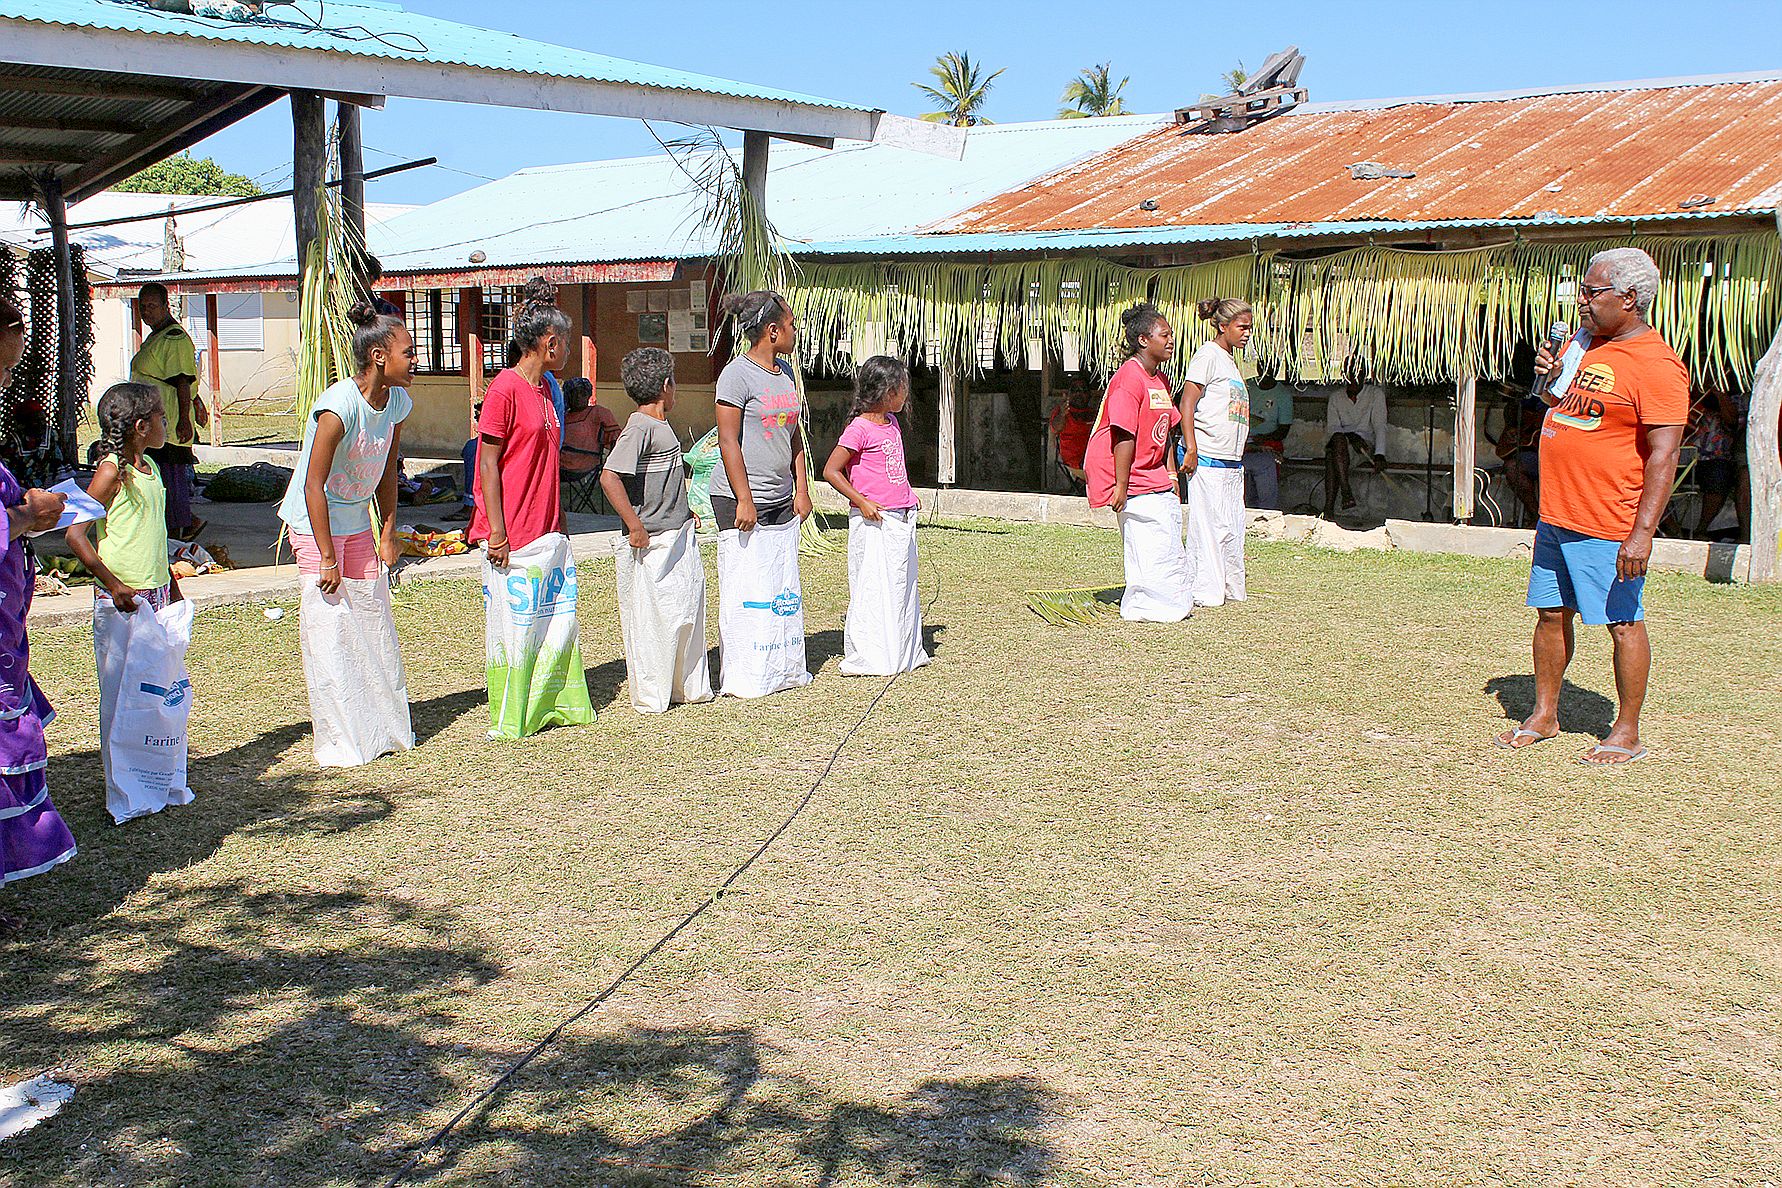 Les enfants de la tribu ont eu droit aussi à l’animation avec la course avec les sacs pendant cette journée de marché.